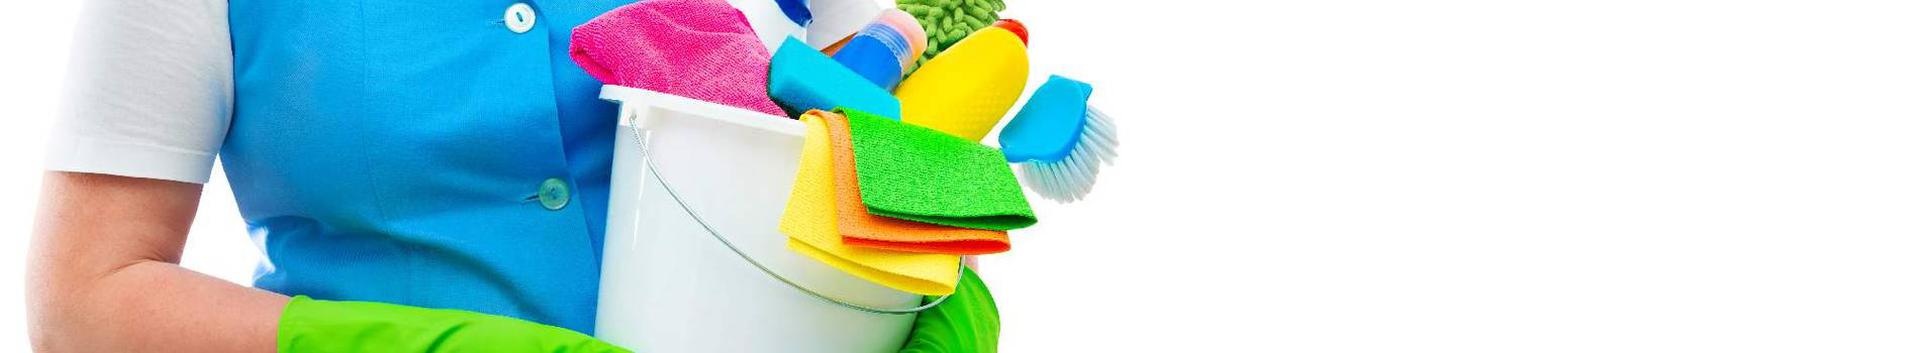 Suurim mainega ettevõte CLEANING PROFF24 OÜ, maineskoor 150, aktiivseid äriseoseid 2. Tegutseb peamiselt valdkonnas: Hoonete tööstuslik puhastus.